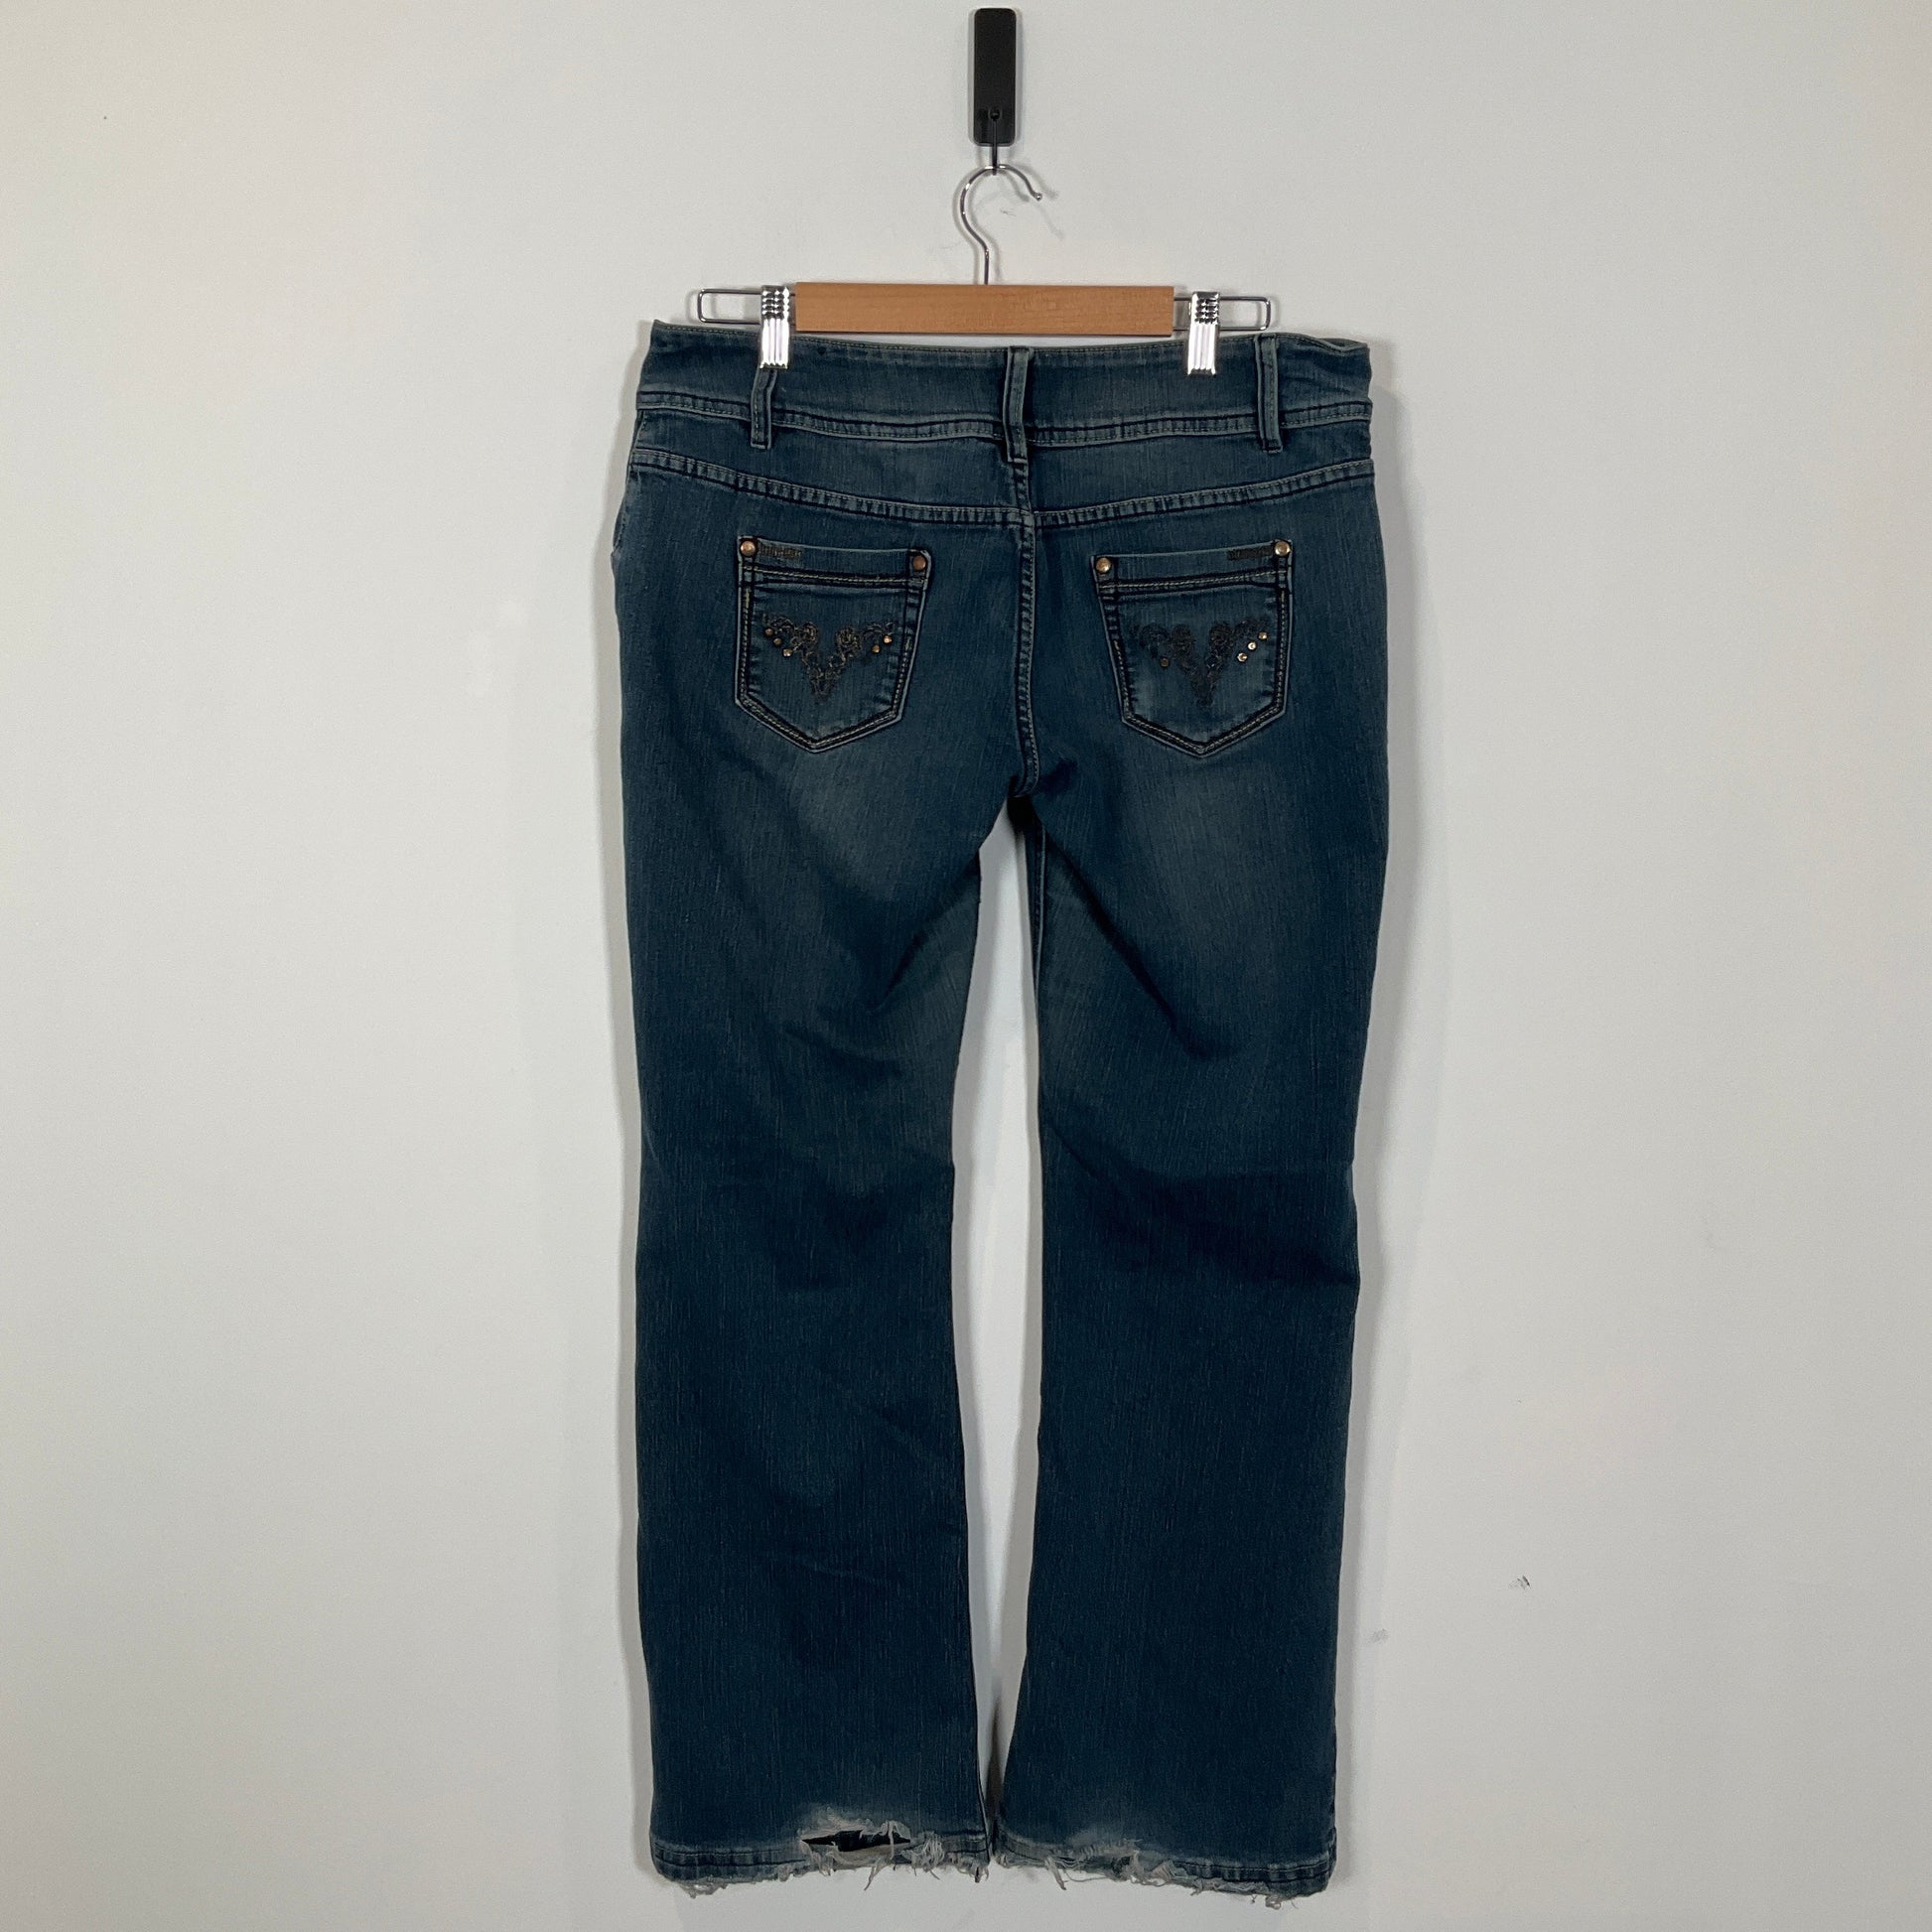 Pagani - Jeans Pants